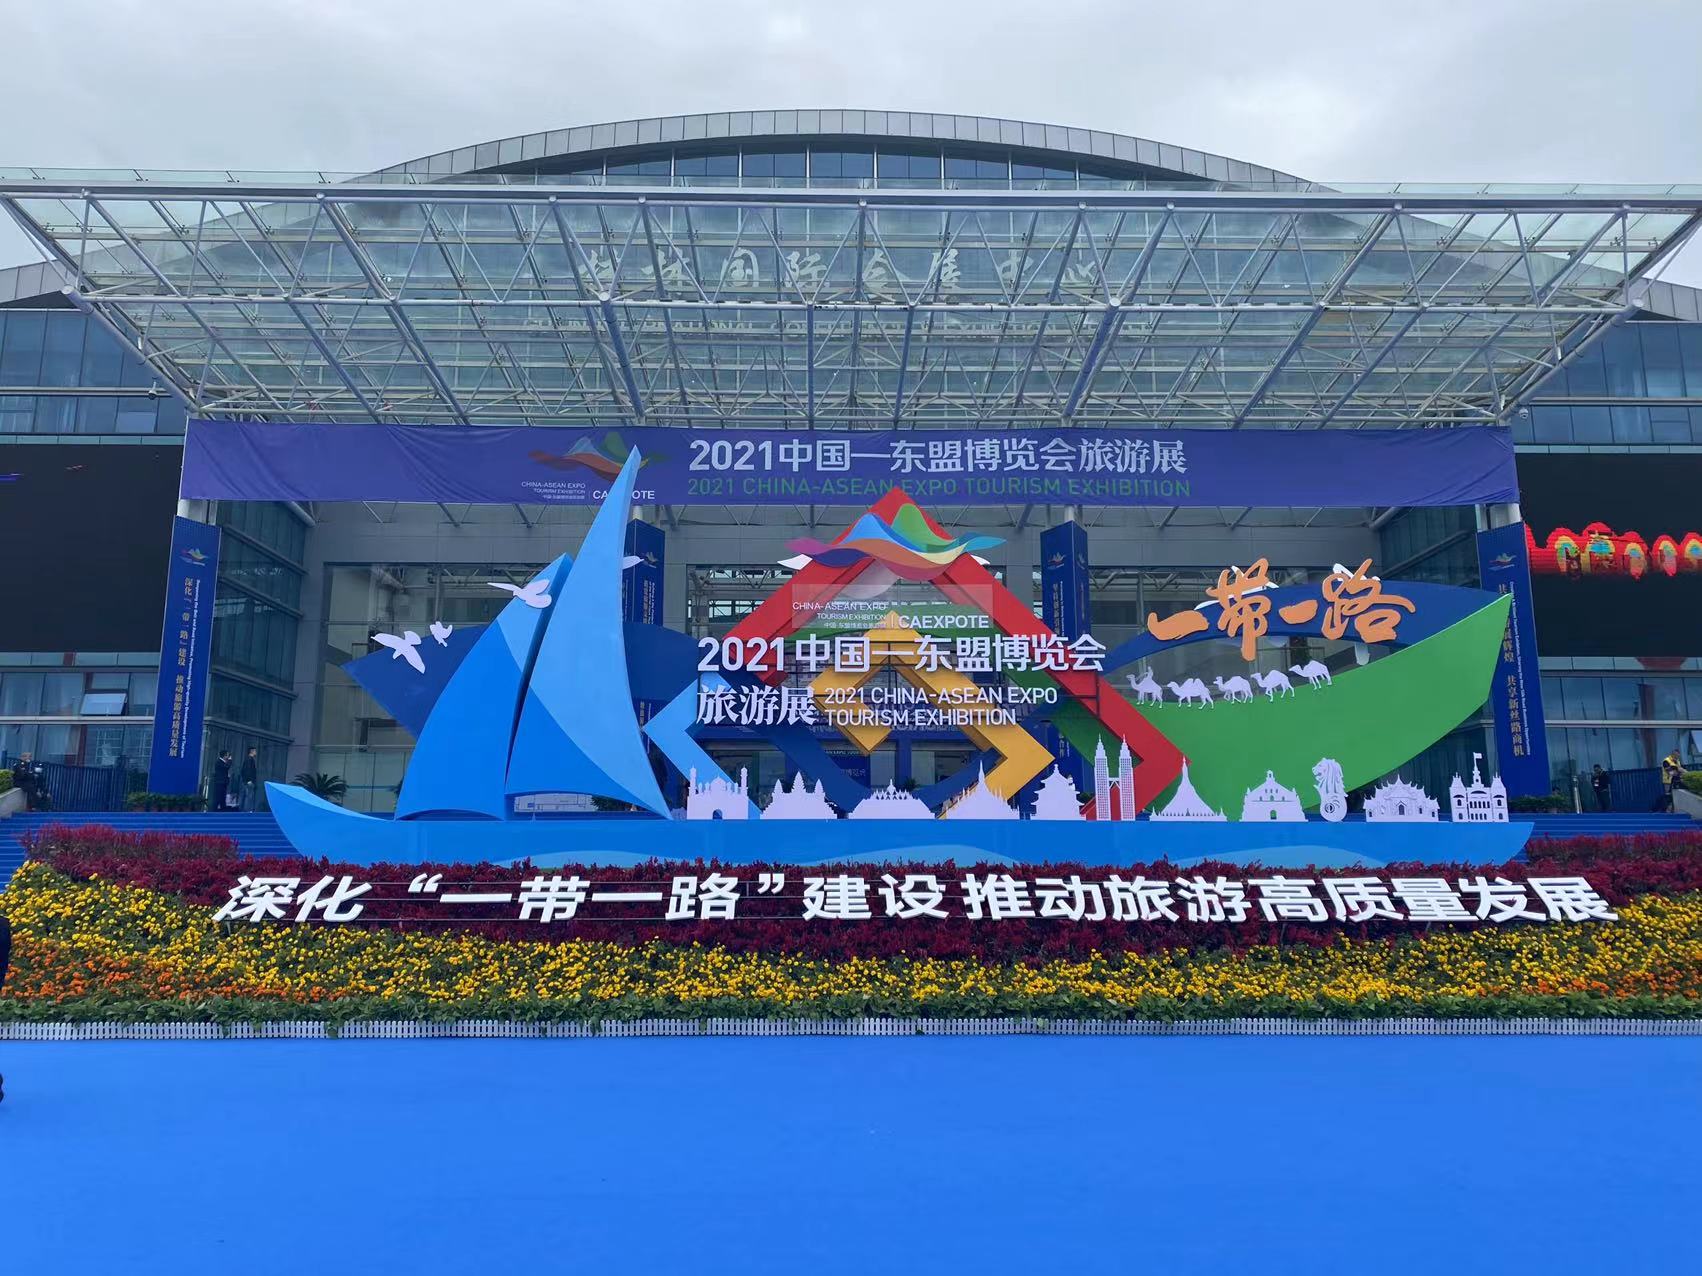 银河游戏国际网站亮相2021中国—东盟博览会旅游展，吸粉无数